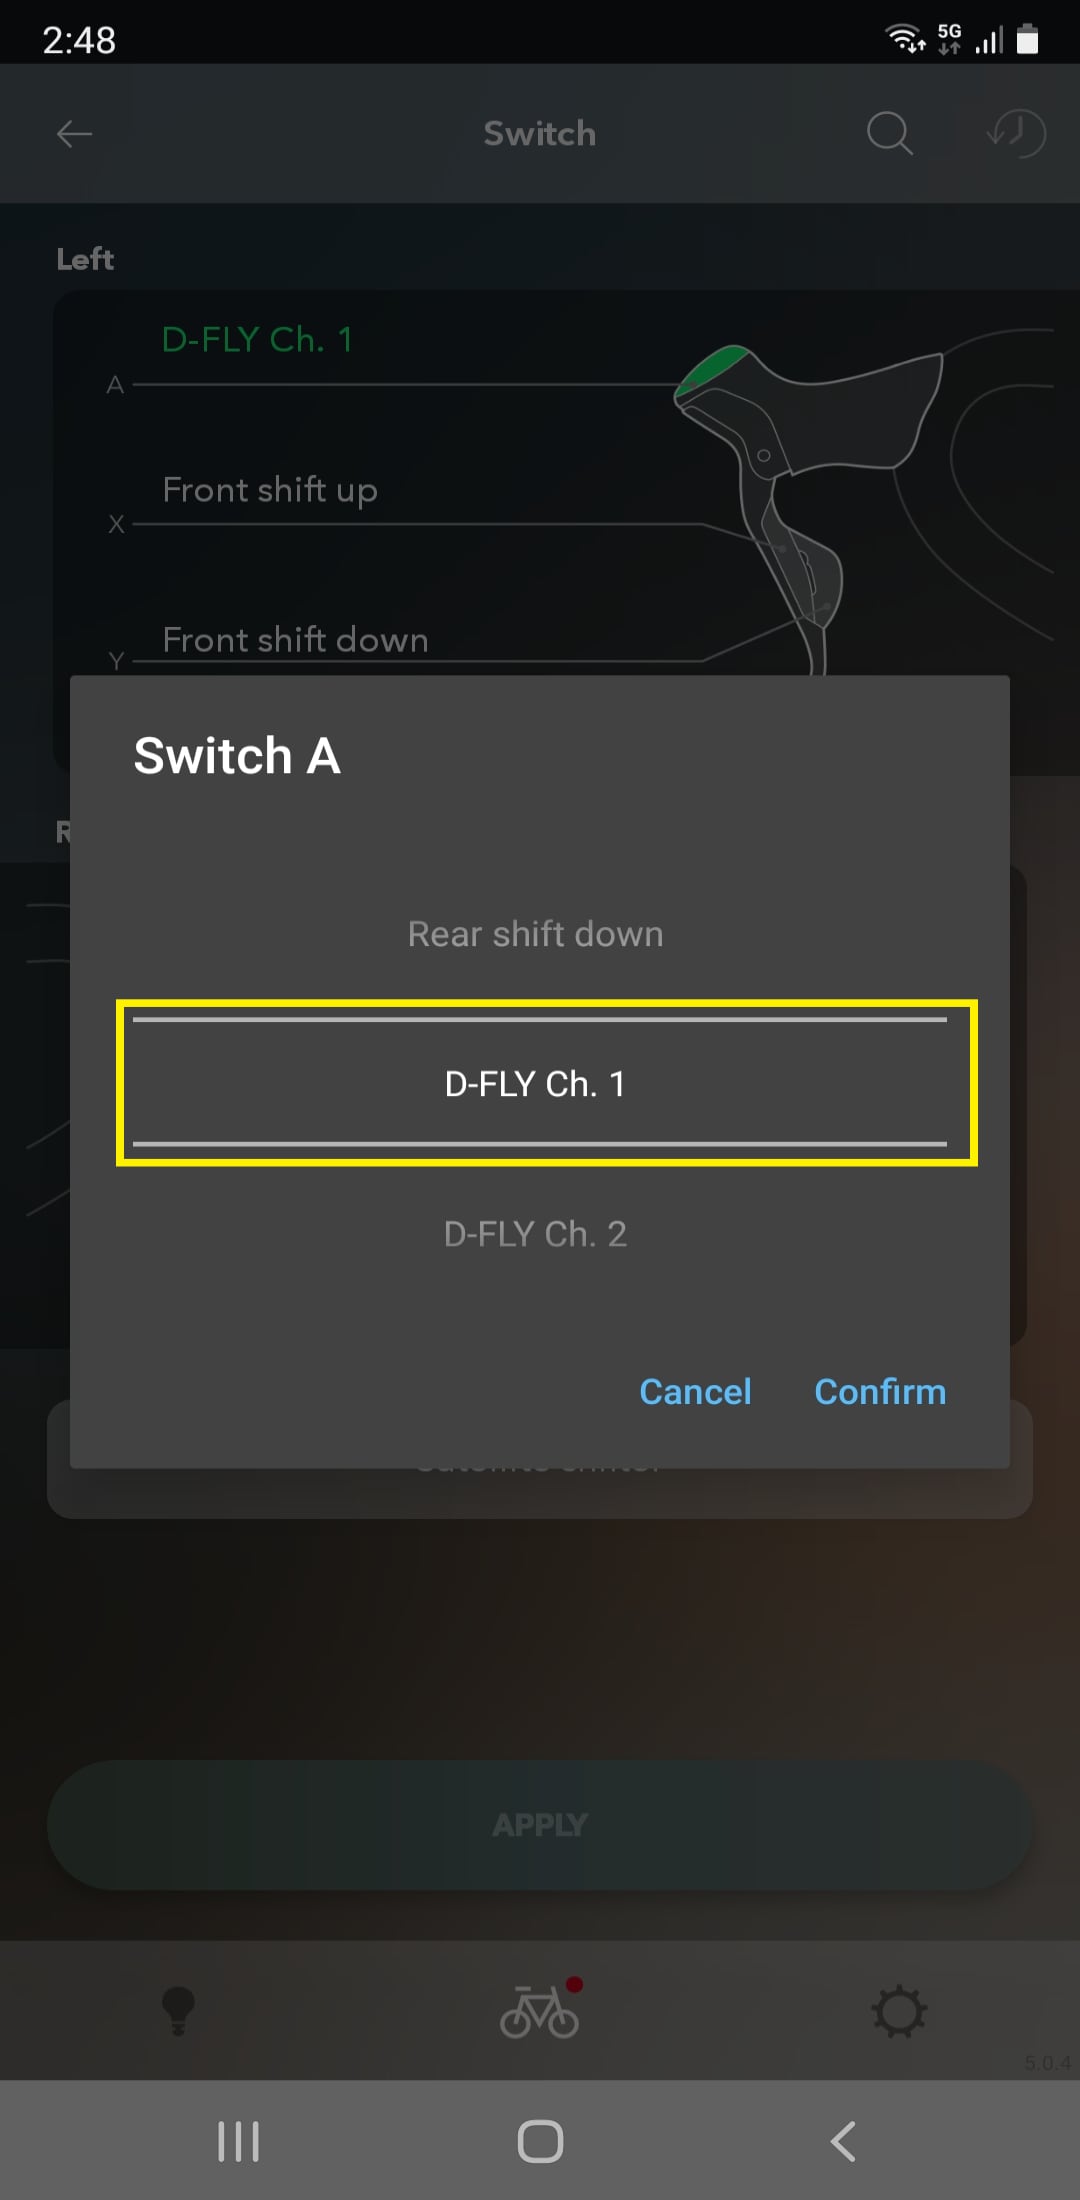 Wählen Sie einen D-FLY-Kanal zwischen 1 und 4 aus.